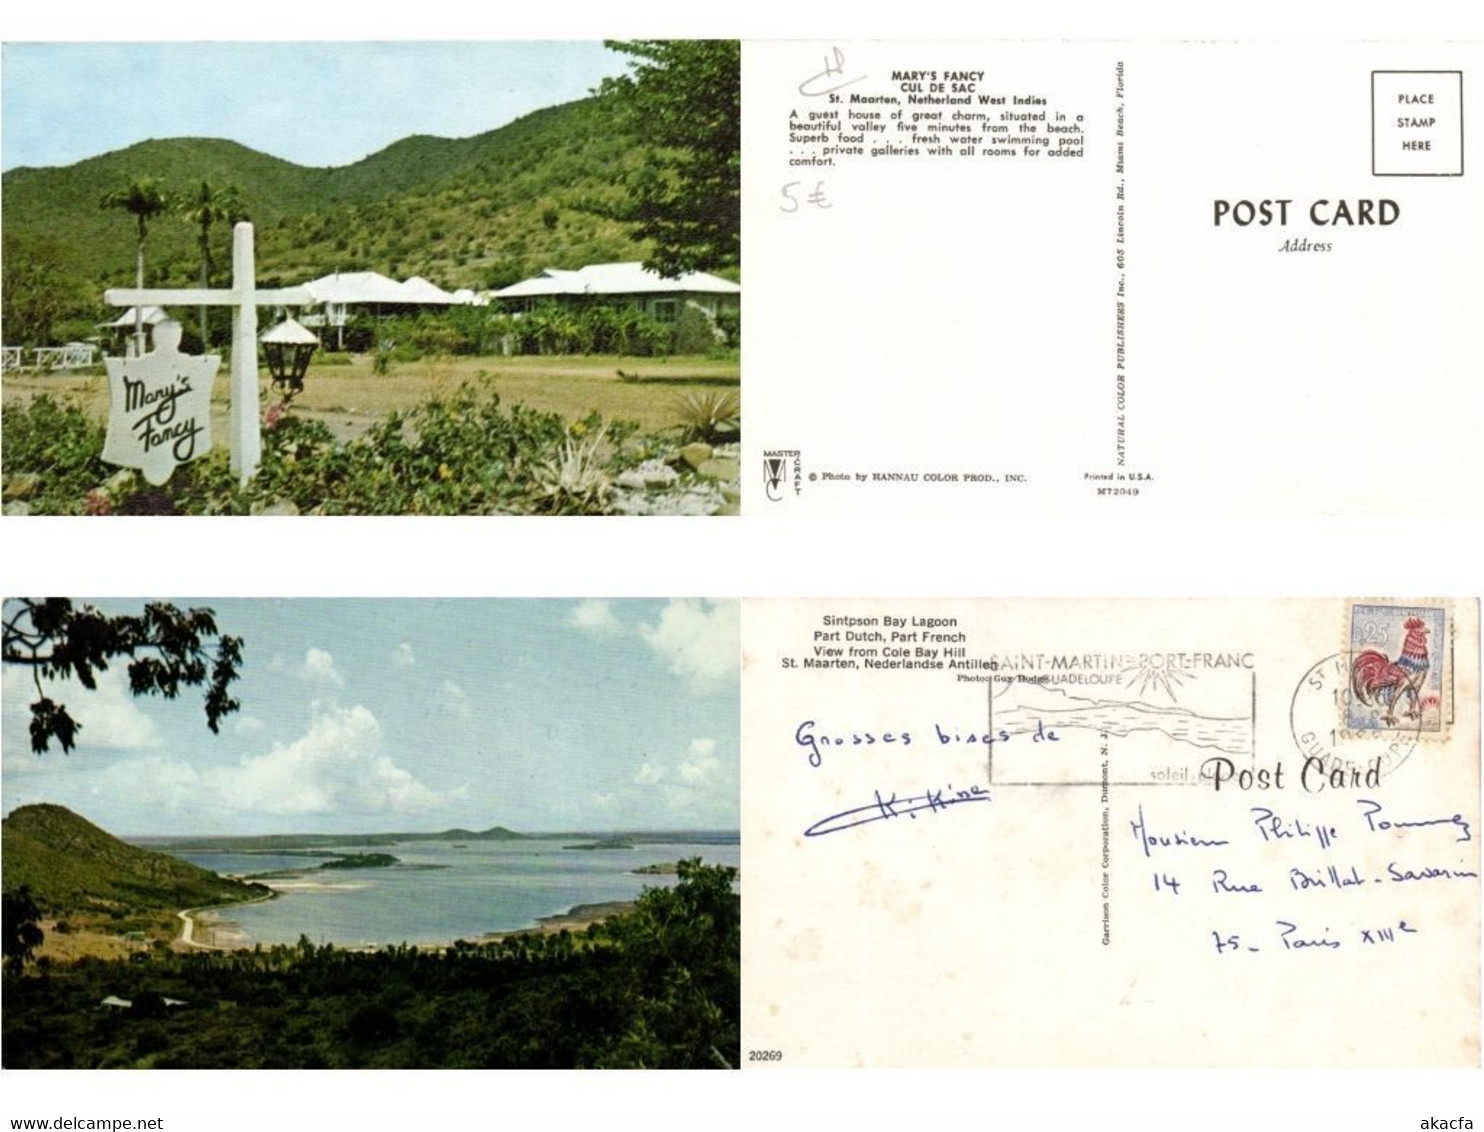 ST.MAARTEN DUTCH WEST INDIES CARIBBEAN ISLANDS 17 Modern Postcard (L6105)